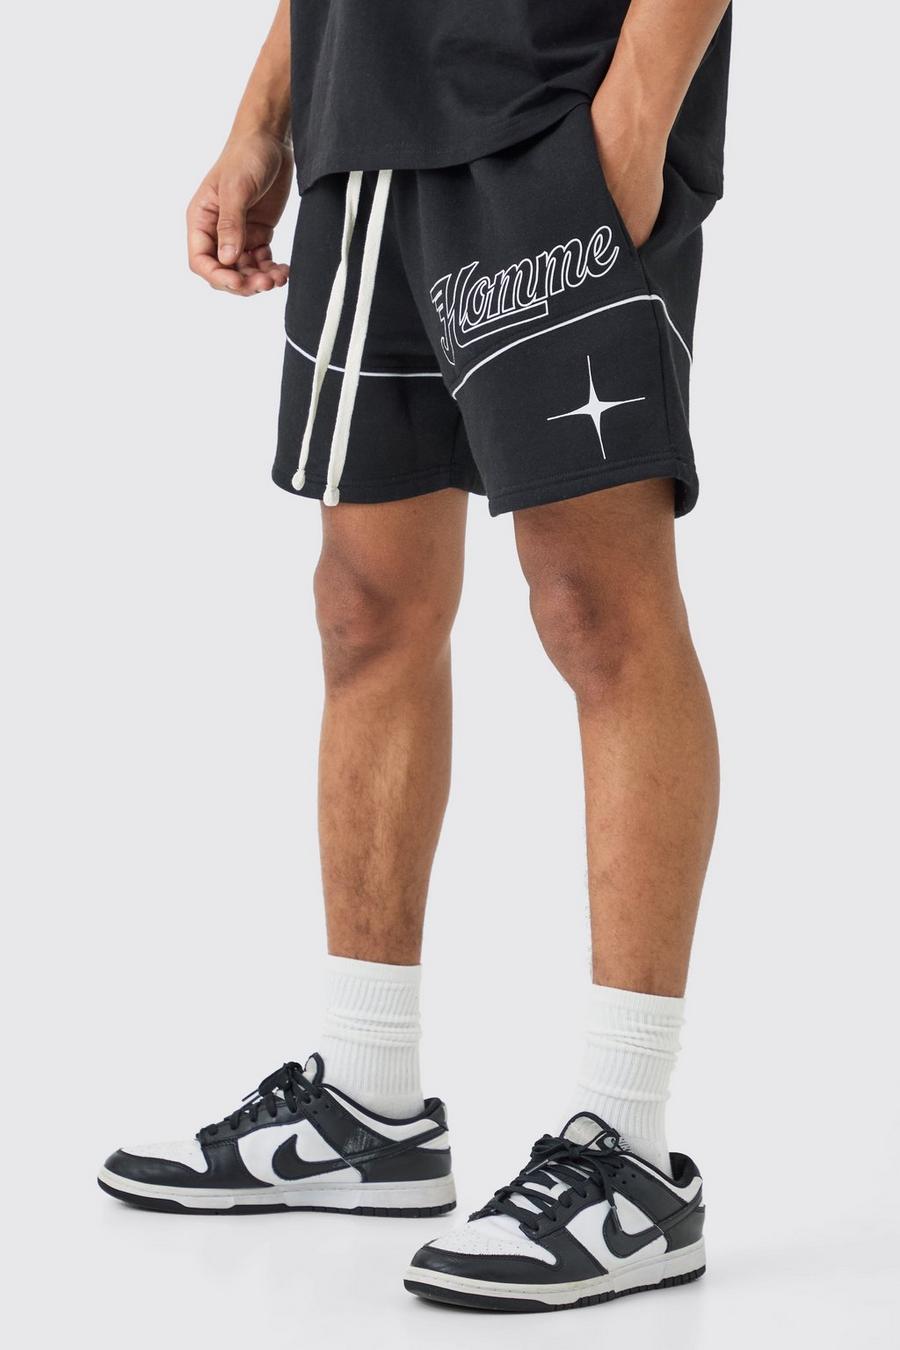 Pantalón corto holgado de vóleibol Homme, Black